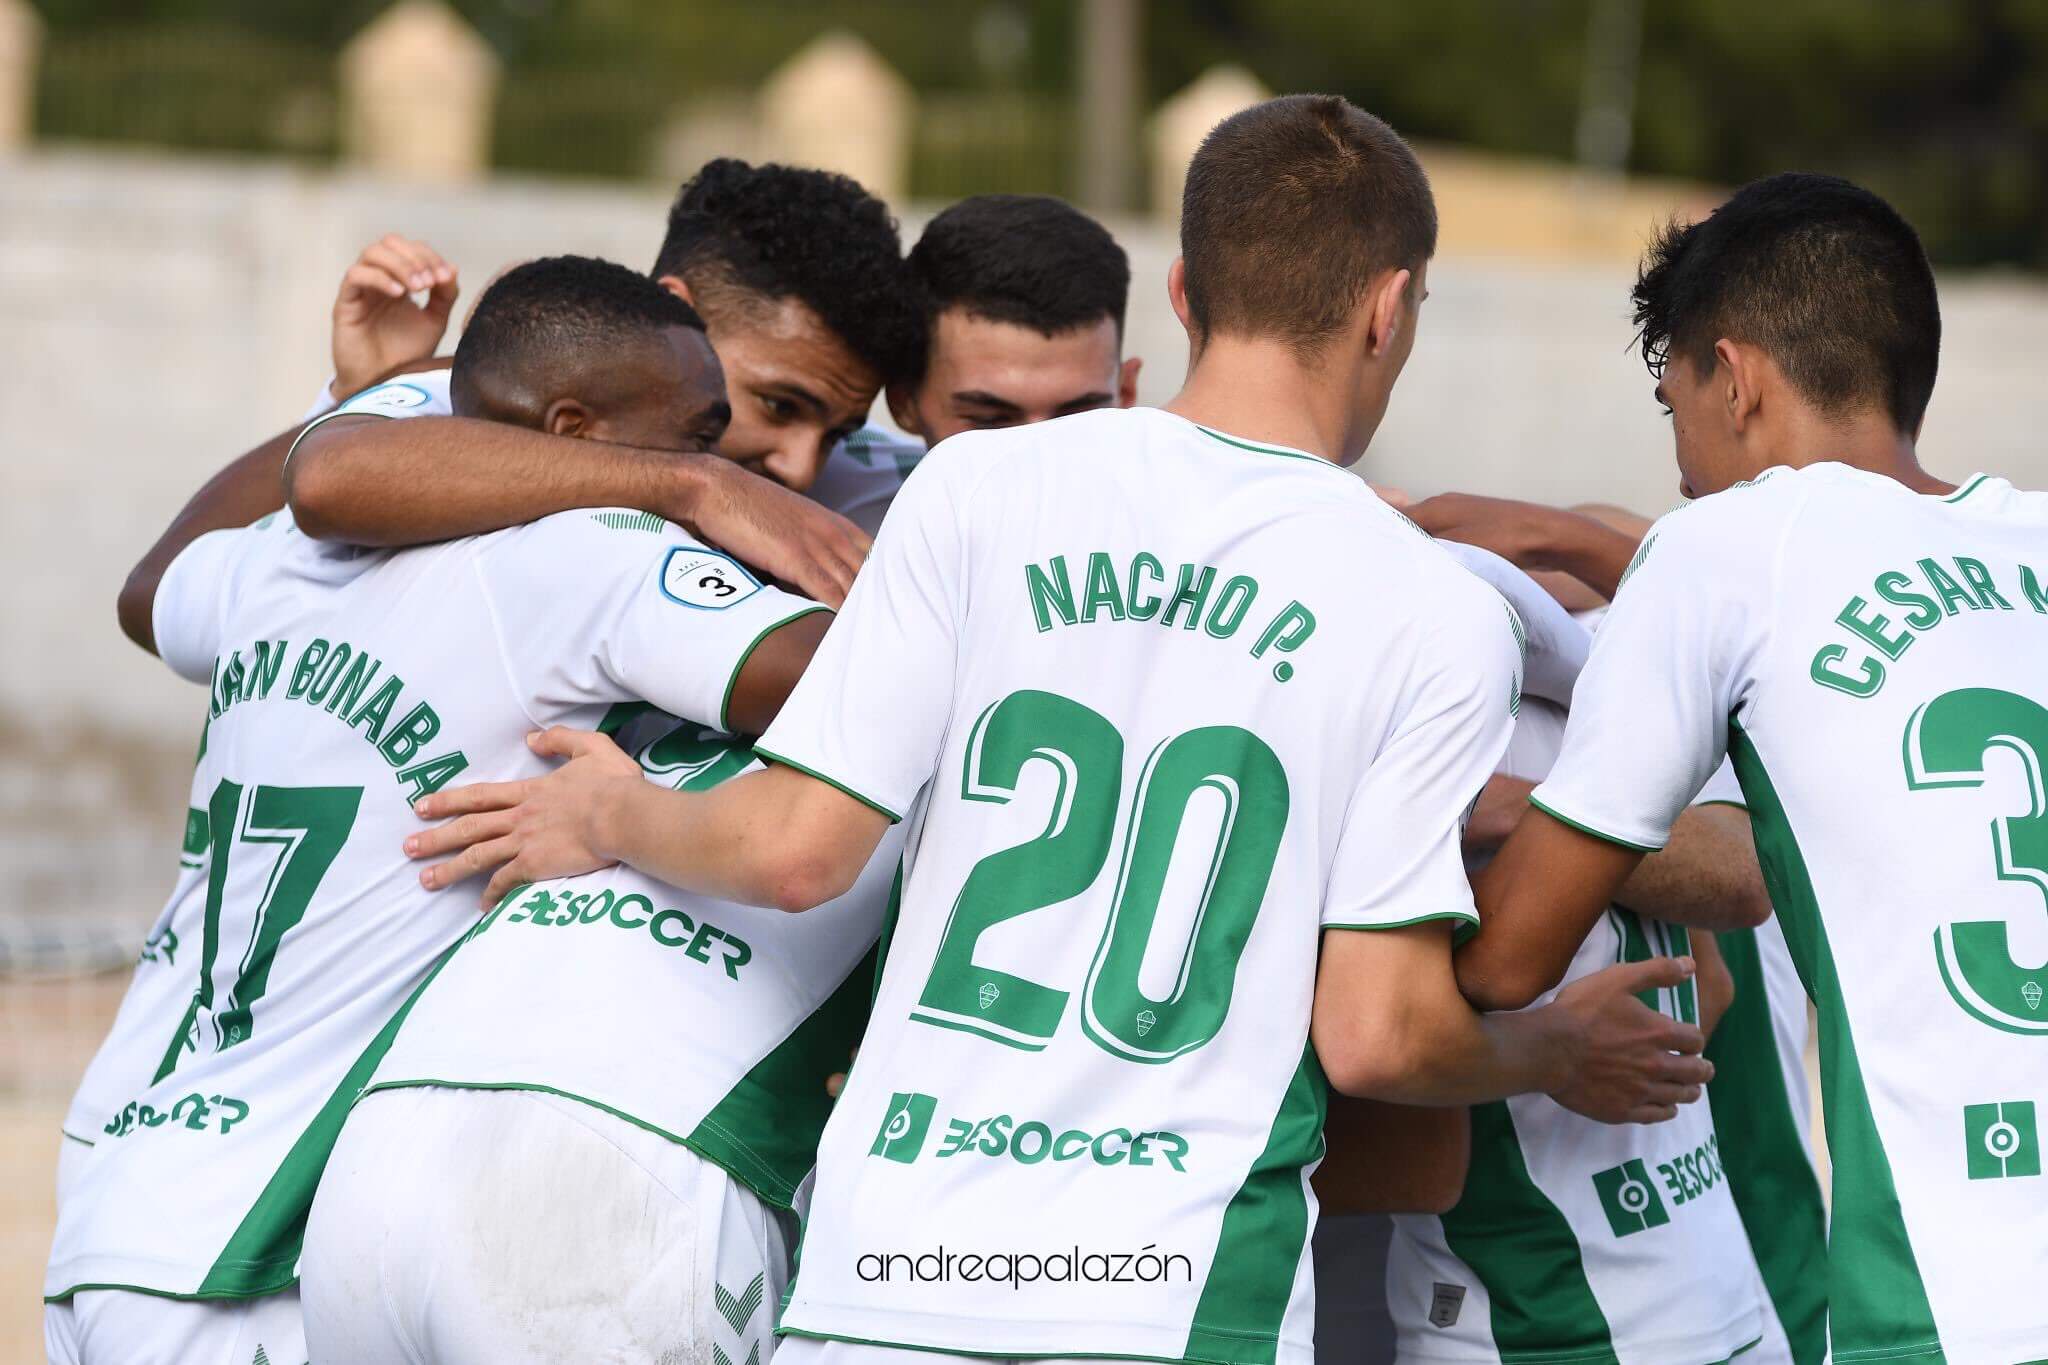 Los jugadores del Elche Ilicitano celebran un gol en la temporada 19/20 - Elche C.F.